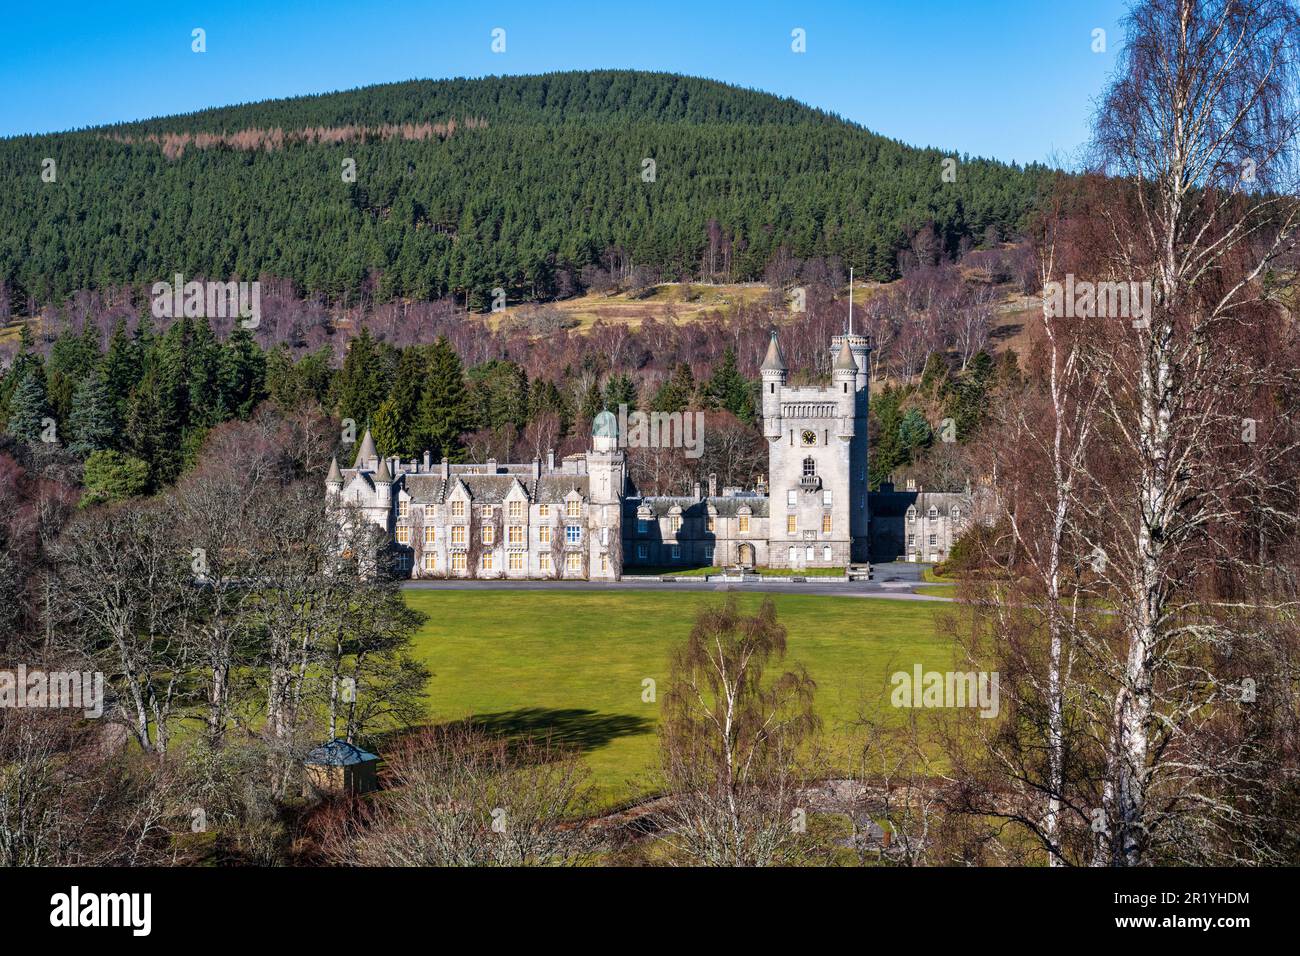 Vista del castillo de Balmoral, residencia de la familia real británica, en Royal Deeside en Aberdeenshire, Escocia, Reino Unido Foto de stock